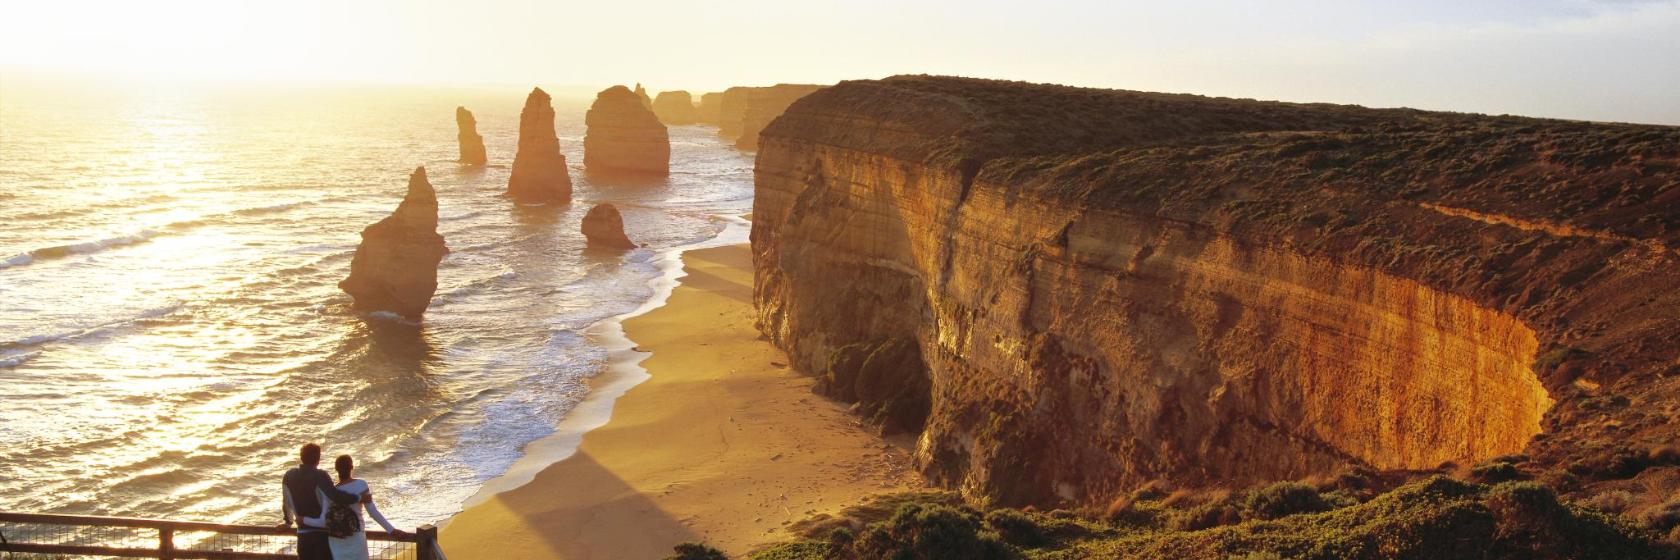 10 המלונות הטובים ביותר באוסטרליה - איפה כדאי לשהות באוסטרליה